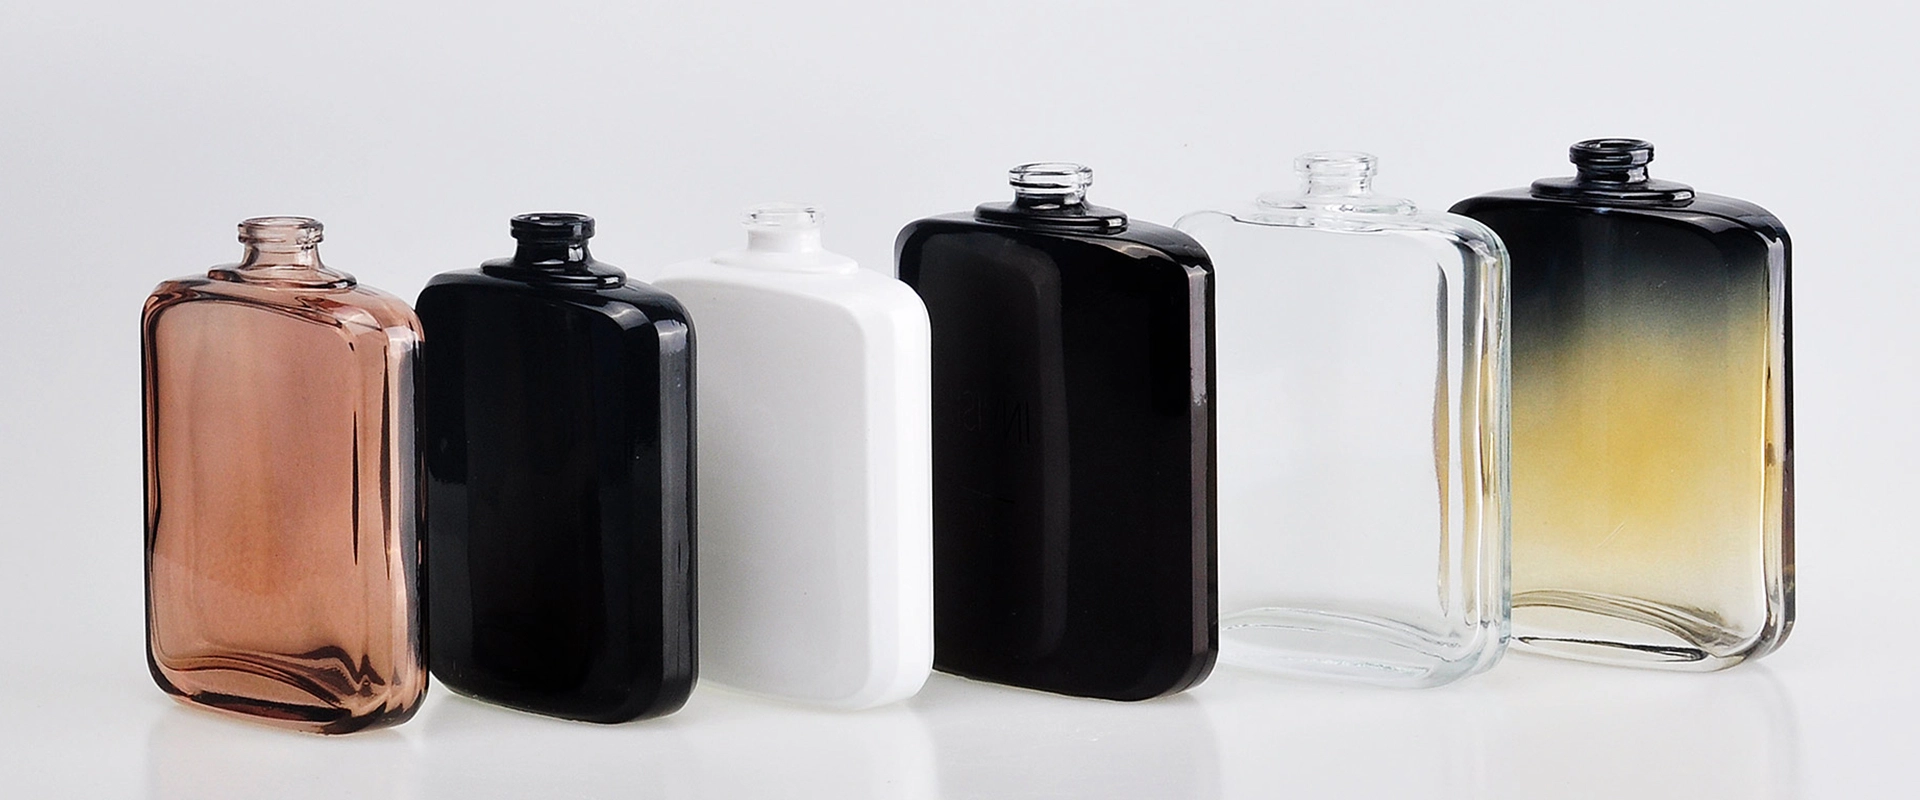 Are Glass Bottles Safe For Storing Food?